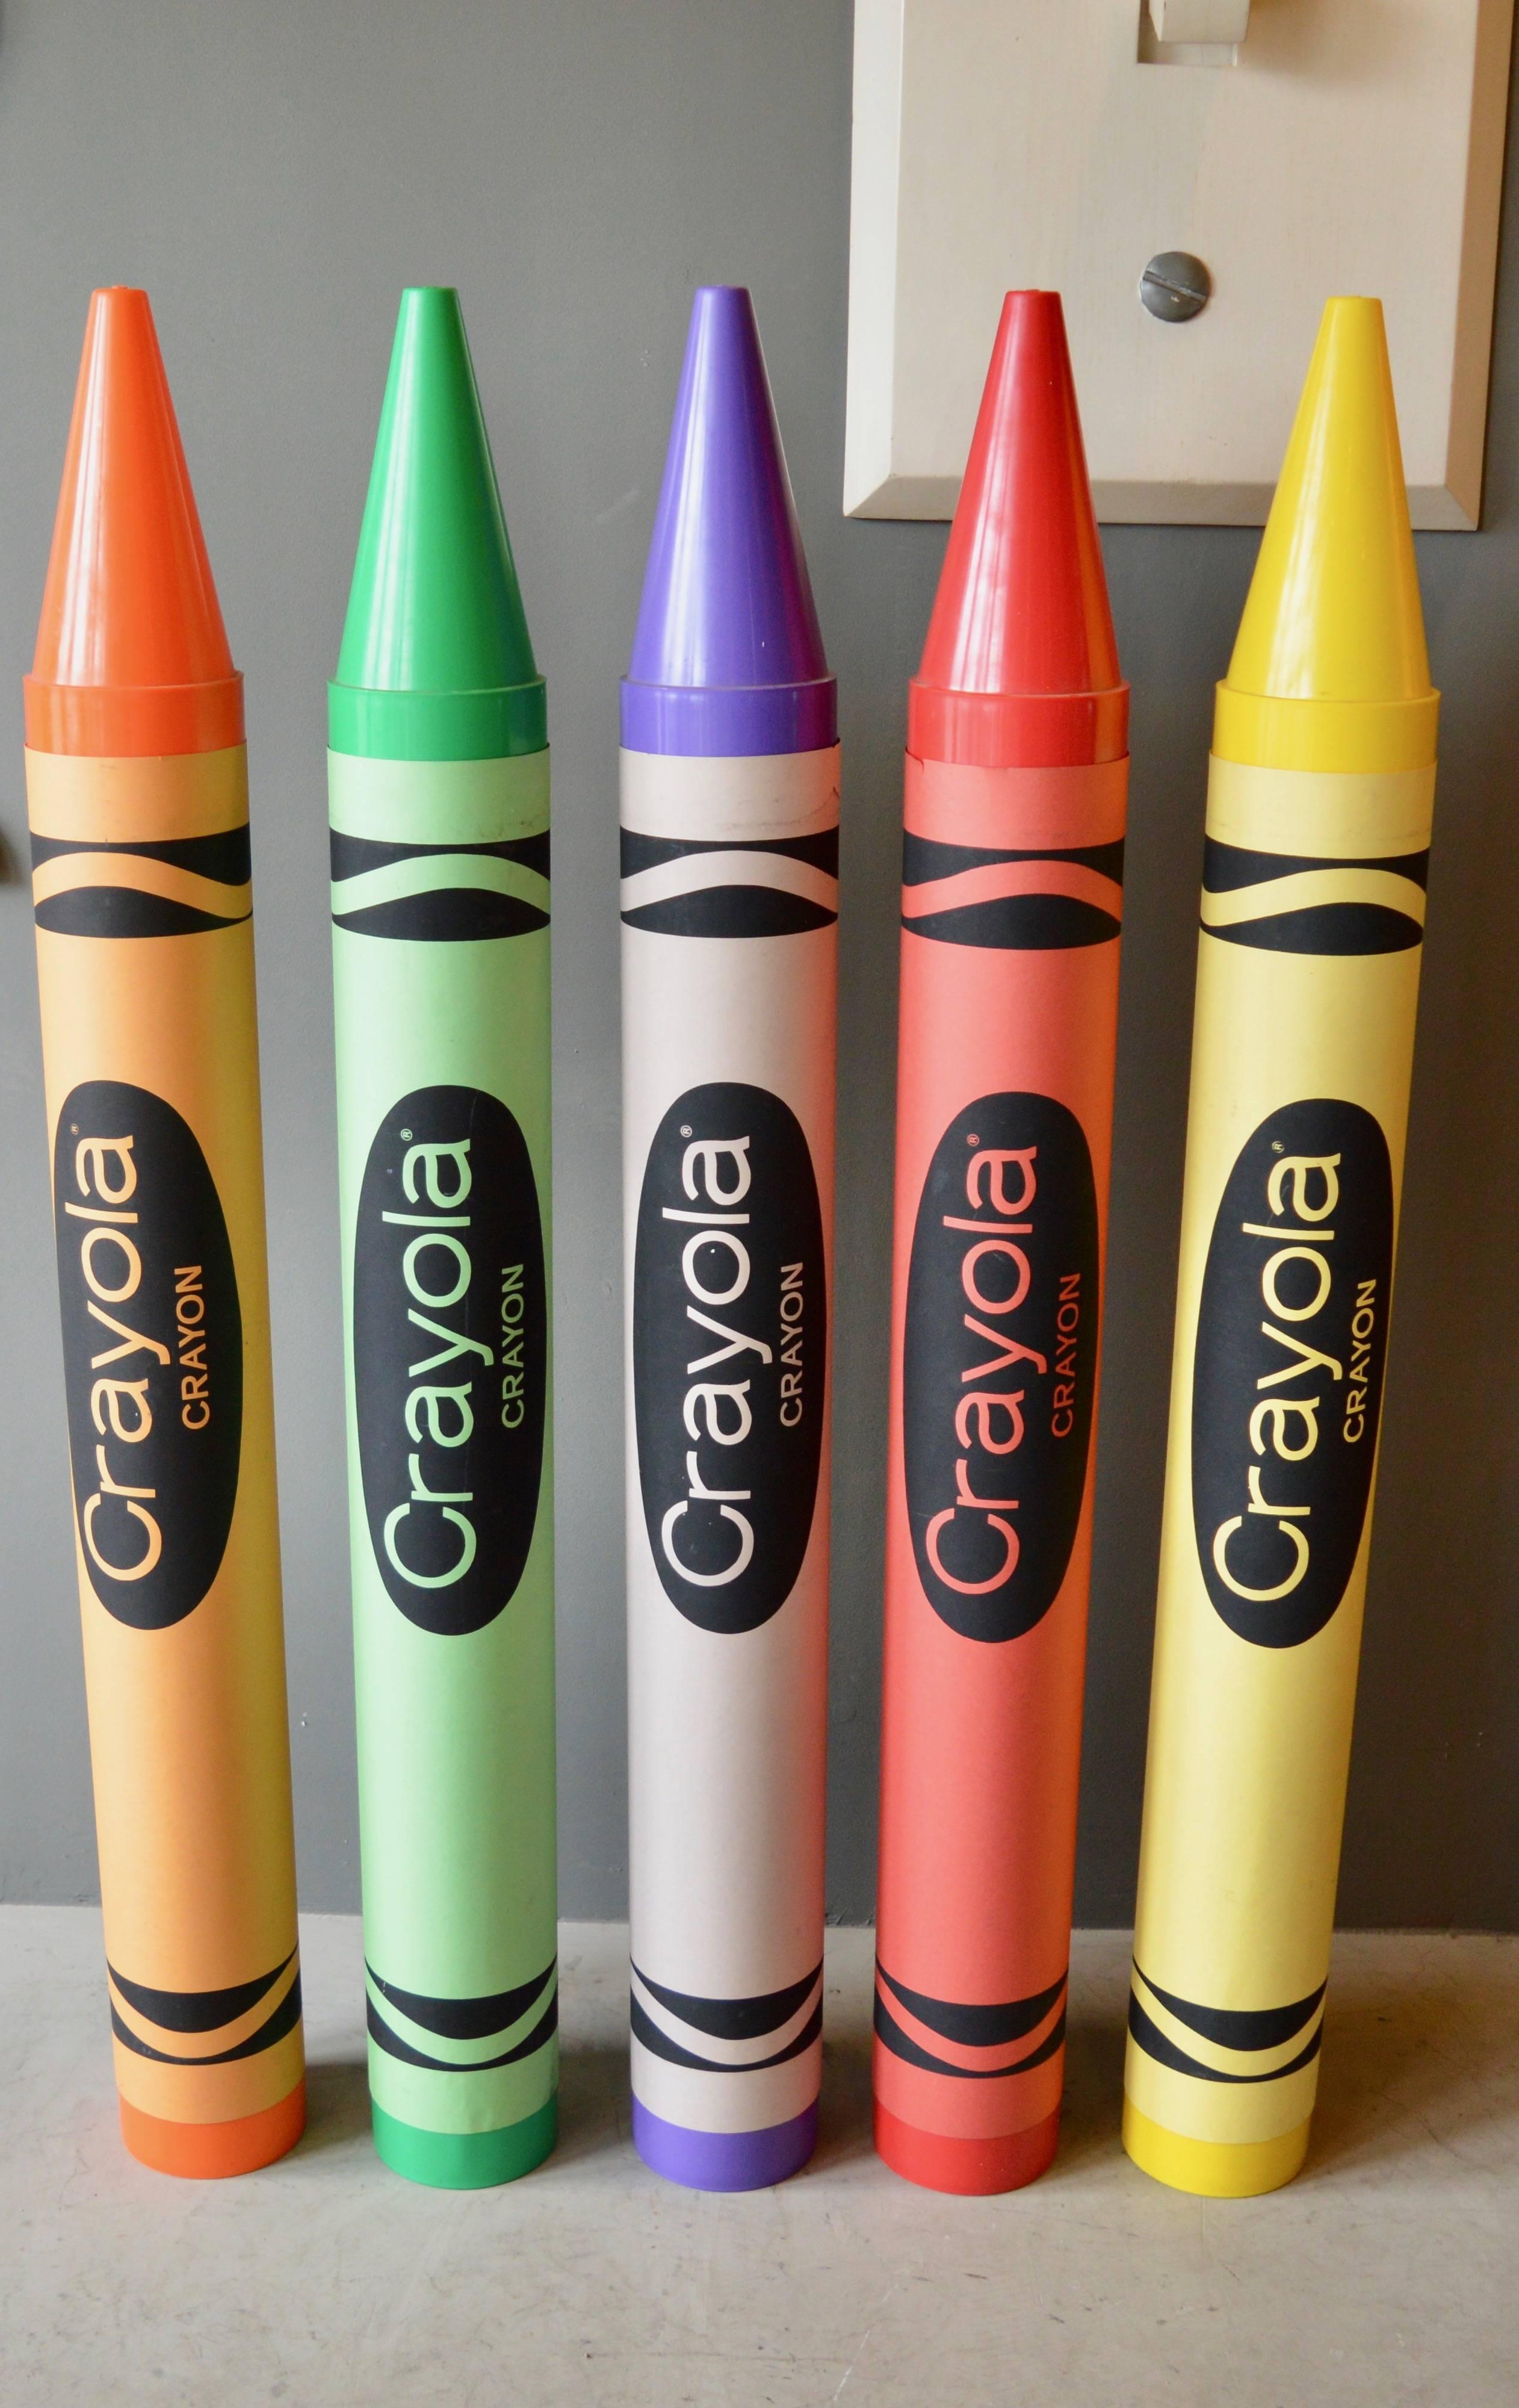 Très rare ensemble de crayons de couleur monumentaux de Crayola. Chaque crayon mesure un peu moins d'un mètre cinquante de haut ! Rouge, orange, jaune, vert et violet. Cadre en plastique lourd avec étiquette en papier épais. Réalisé par Think Bigli.